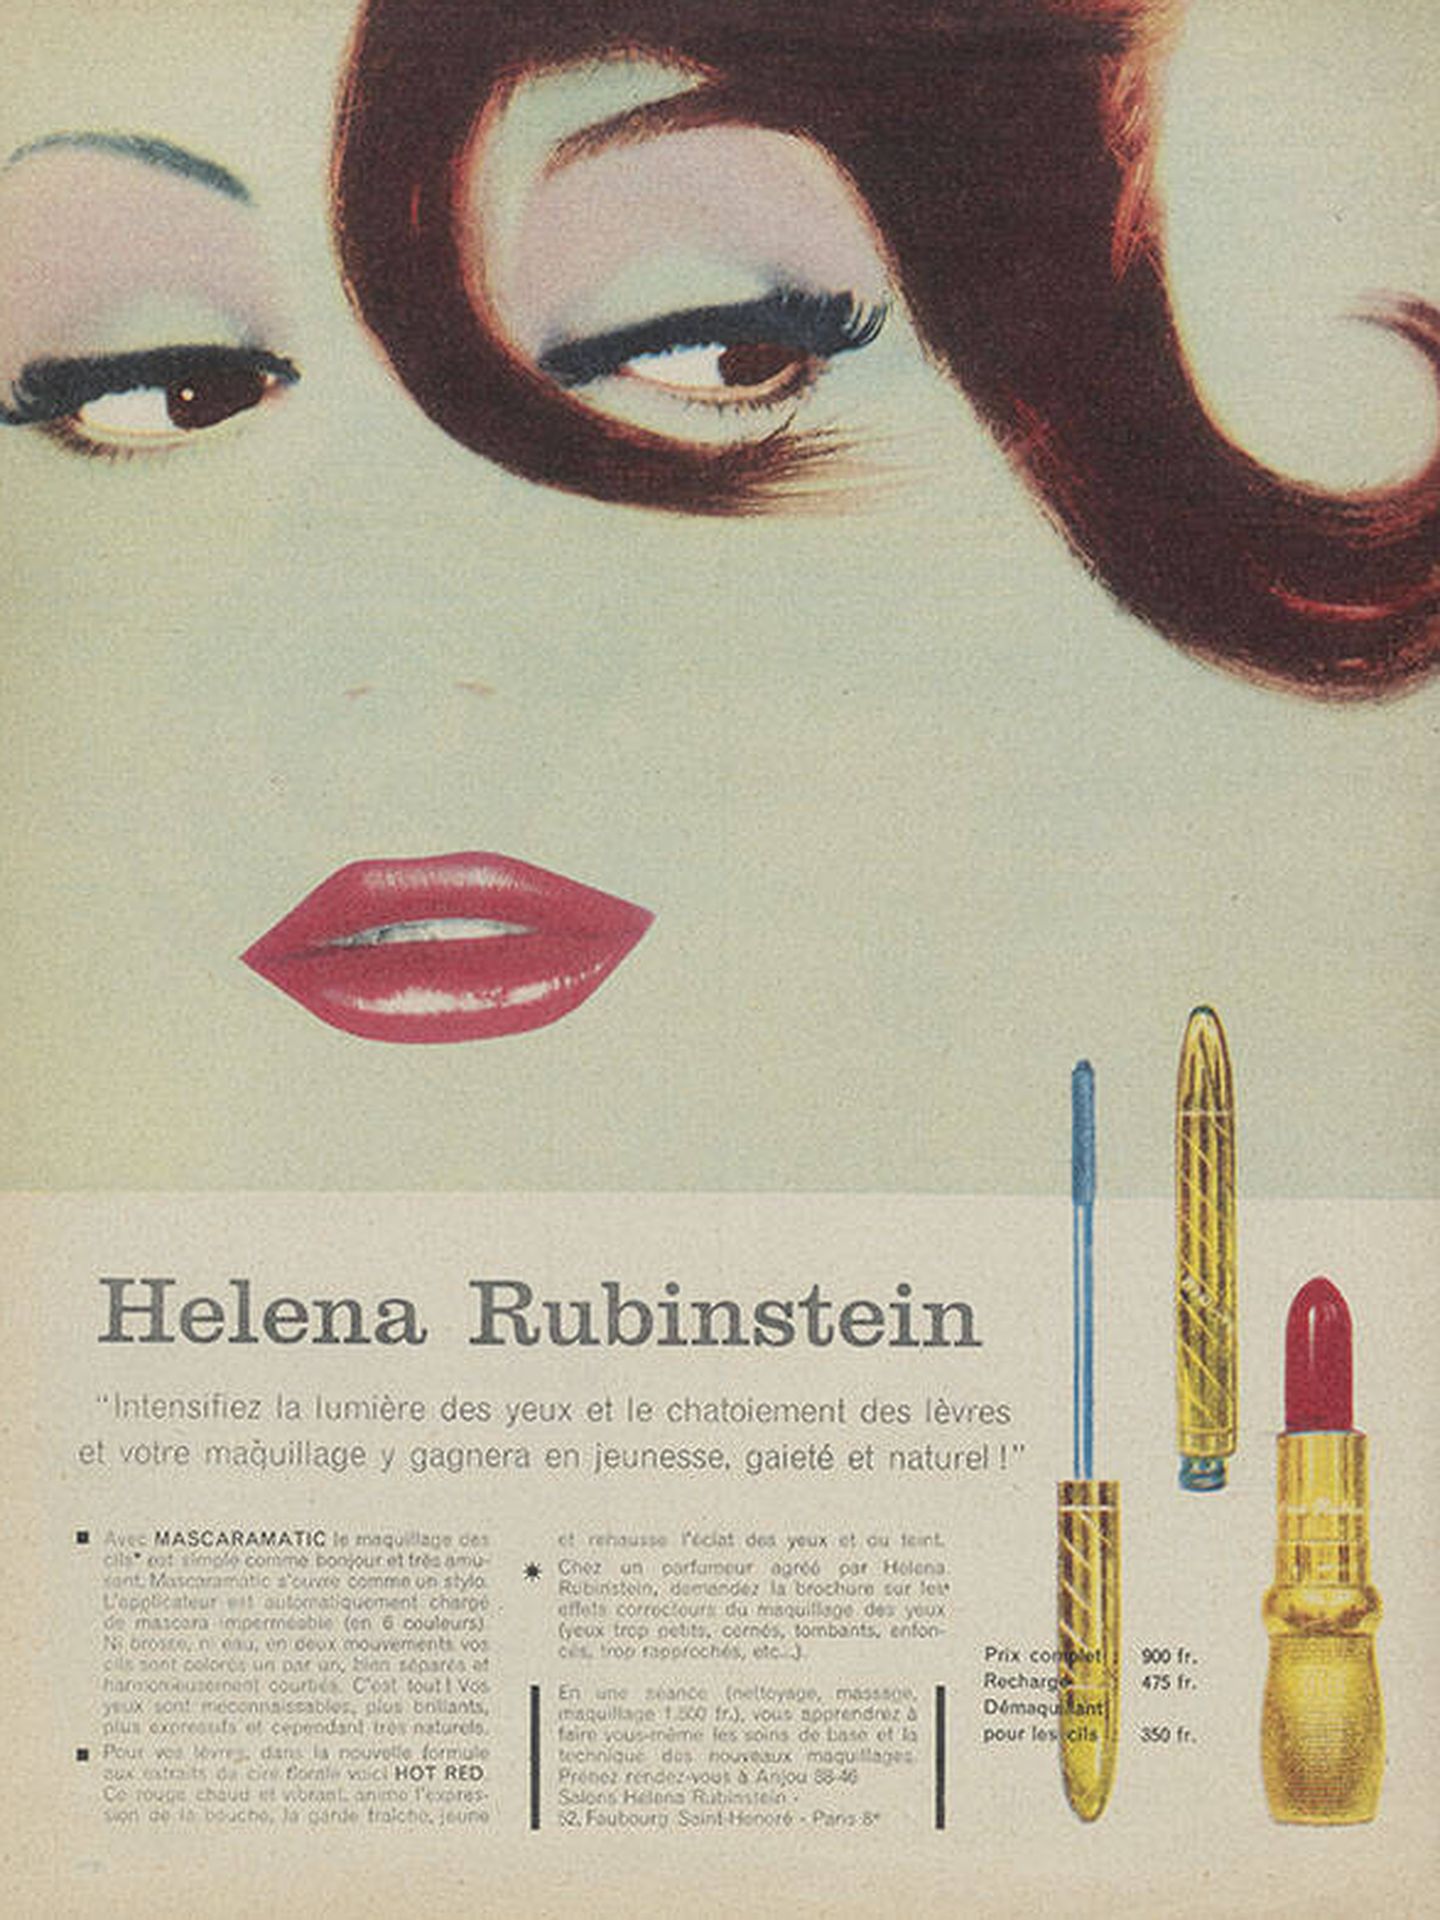 Publicidad de Helena Rubinstein de 1959. (Cortesía de Helena Rubinstein)